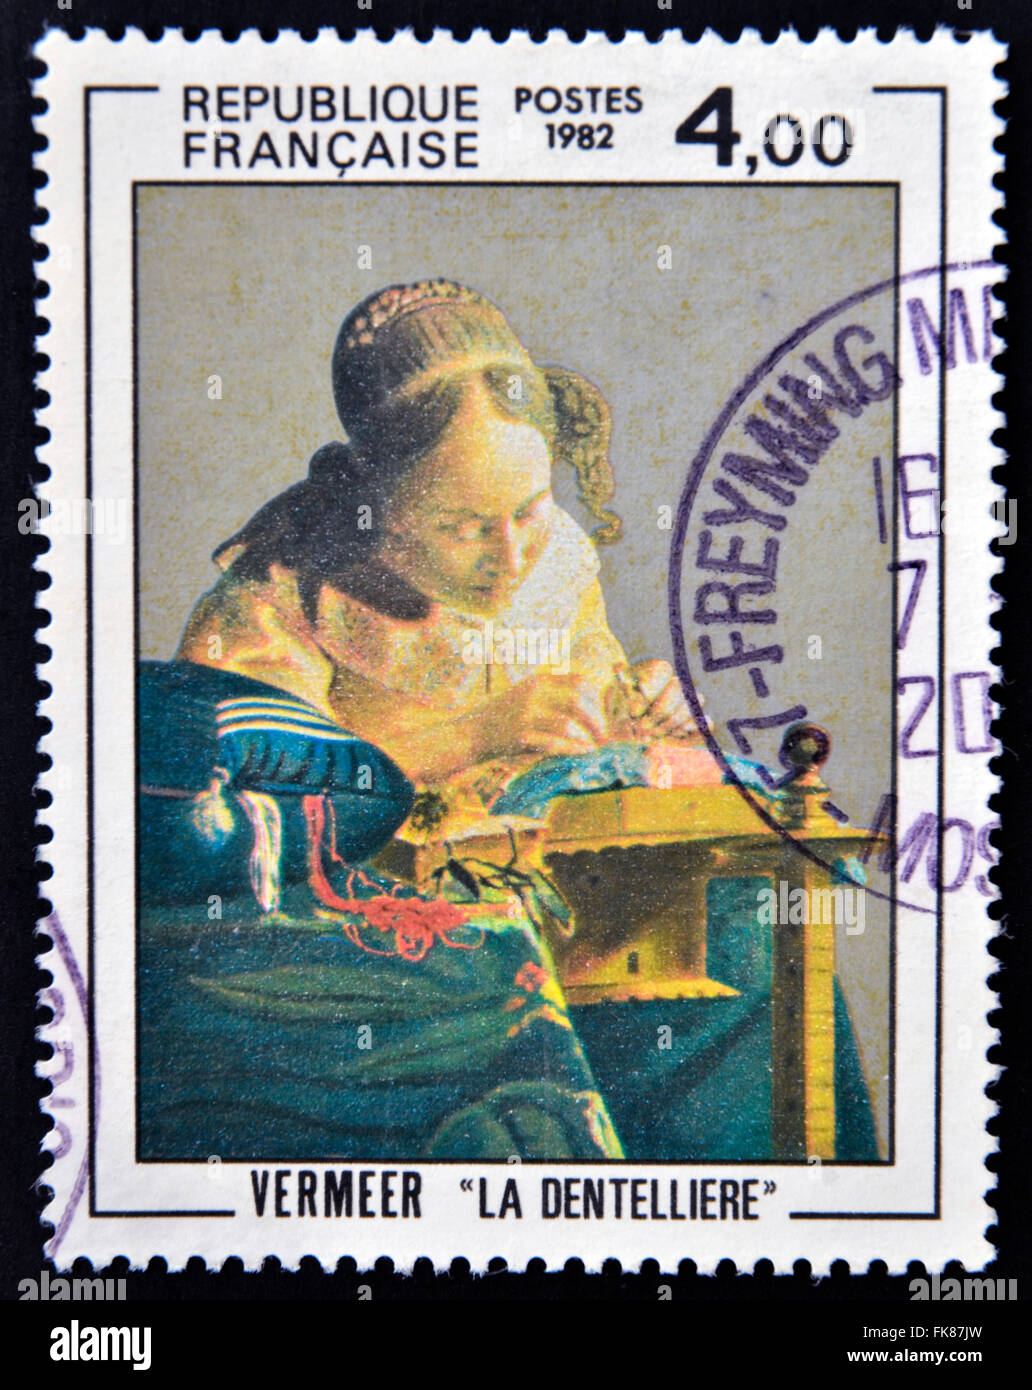 FRANCE - VERS 1982 : un timbre imprimé en France montre la dentellière, peinture de Vermeer, vers 1982 Banque D'Images